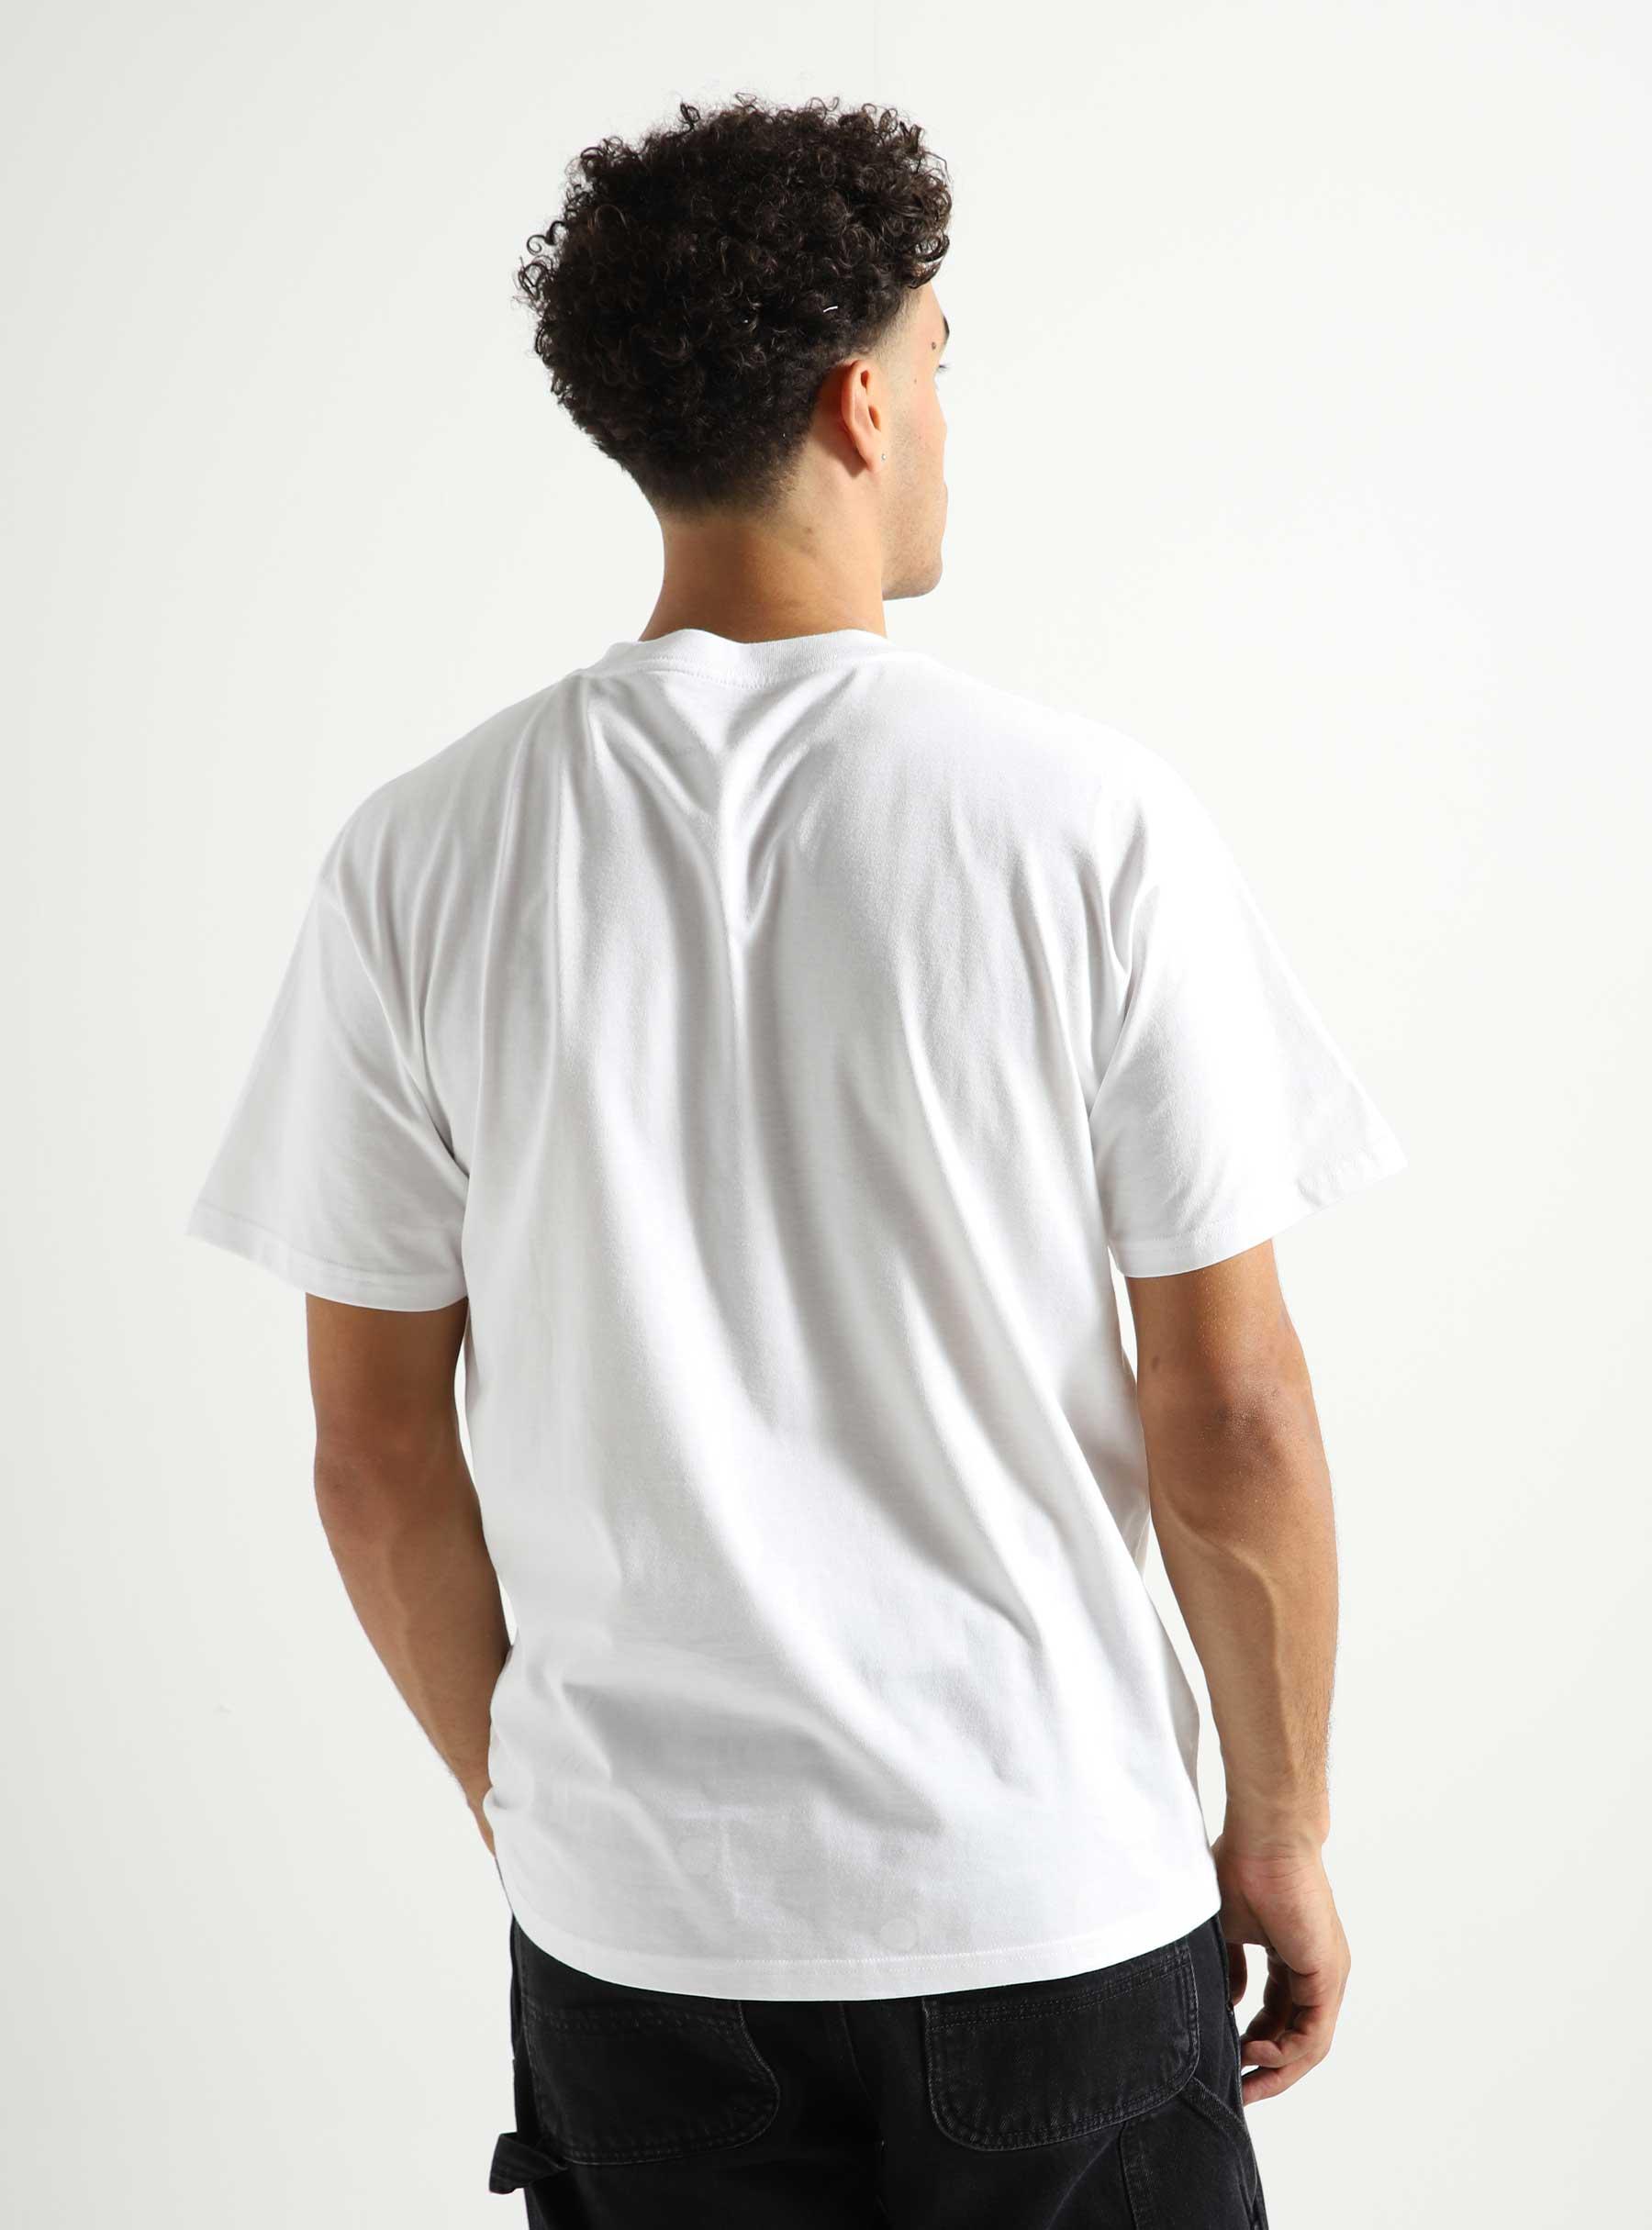 Carhartt WIP Ollie Mac Huskies T-Shirt White - Freshcotton